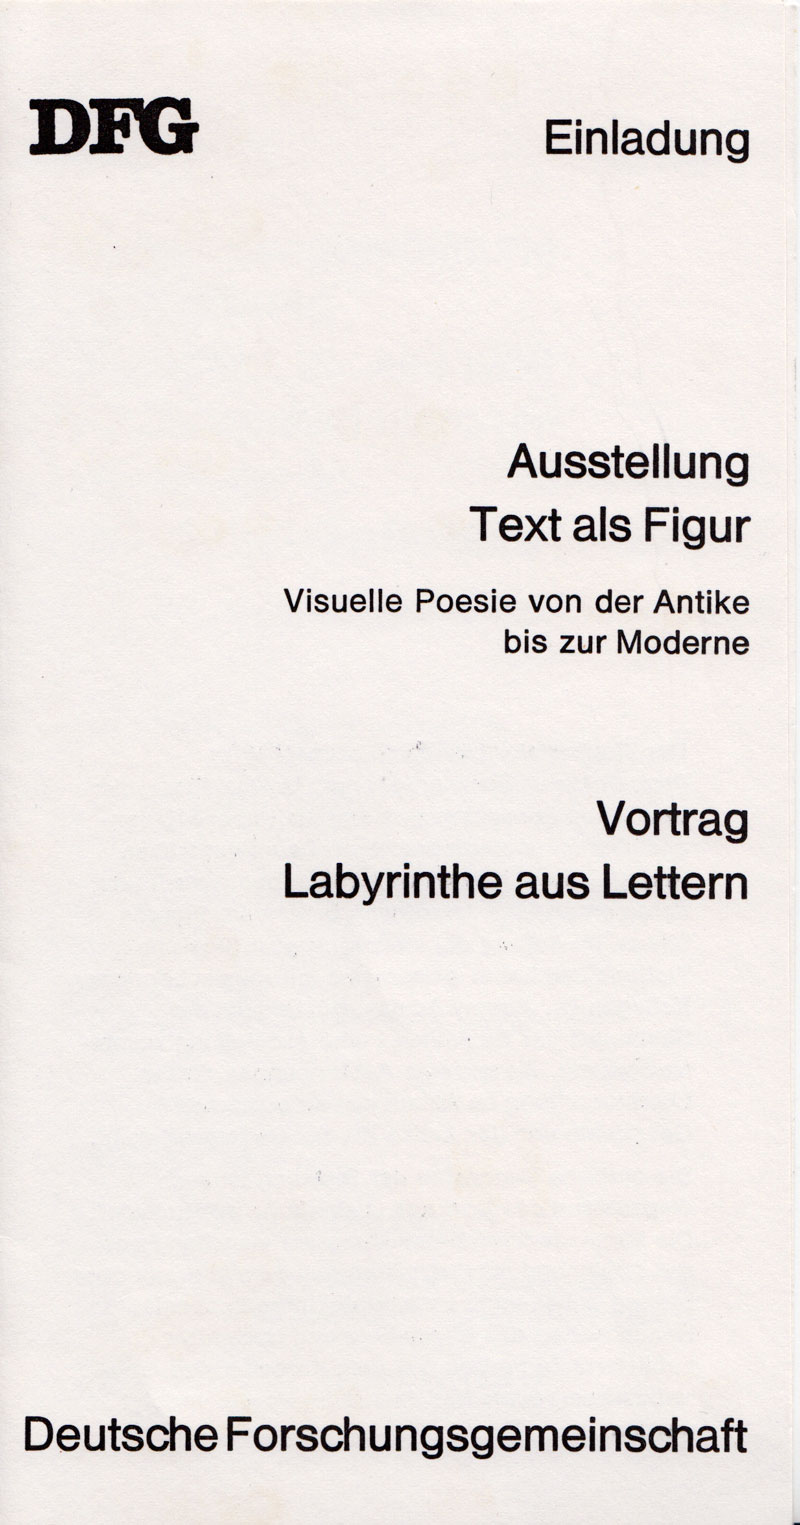 visuelle-poesie-bonn1988